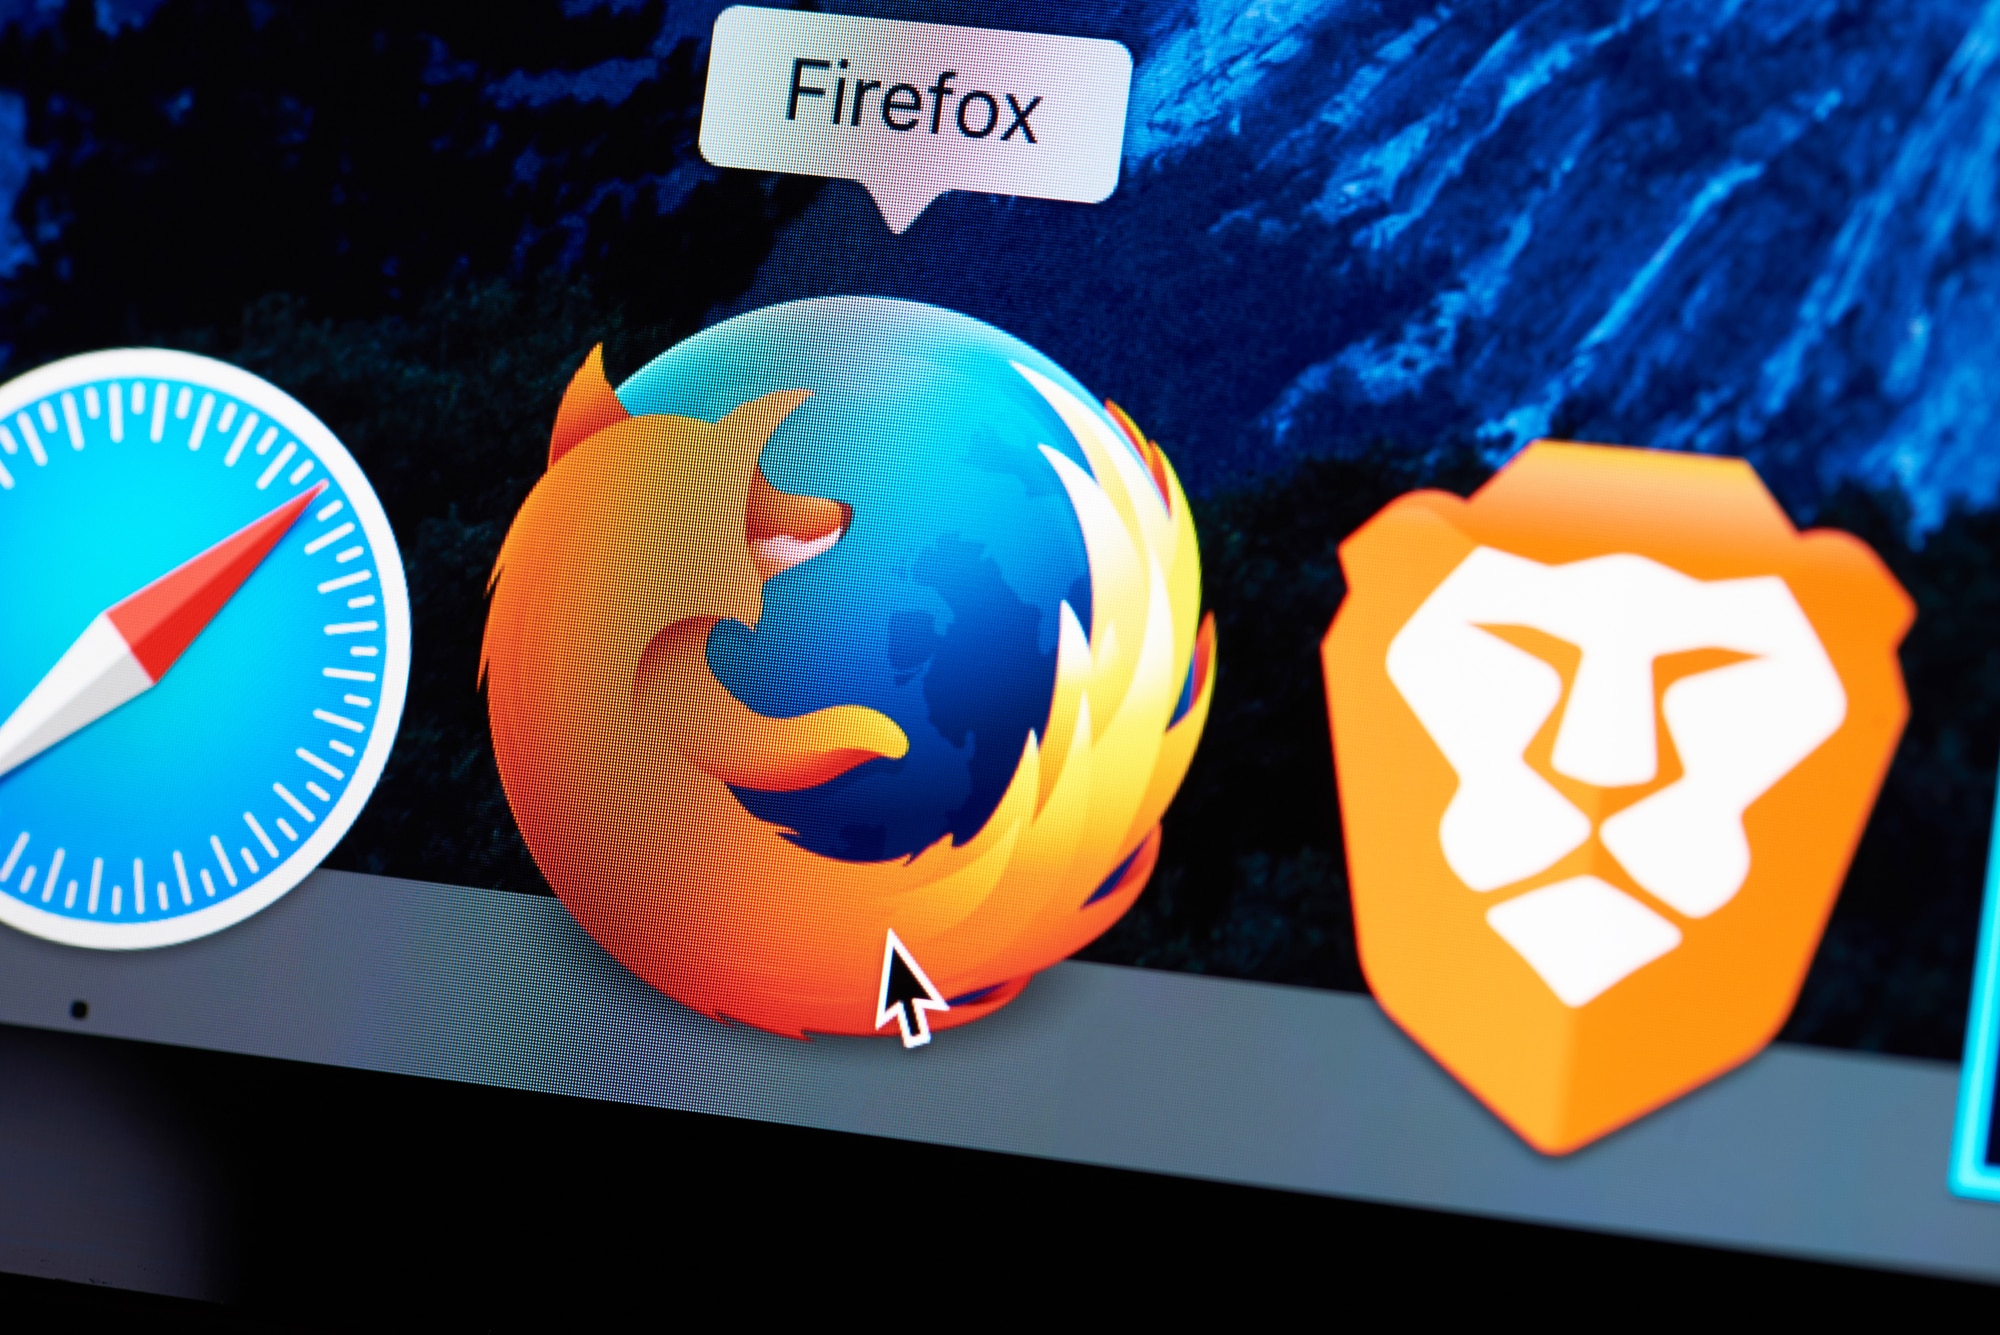 Comparando Brave y Firefox: características y funcionalidades únicas